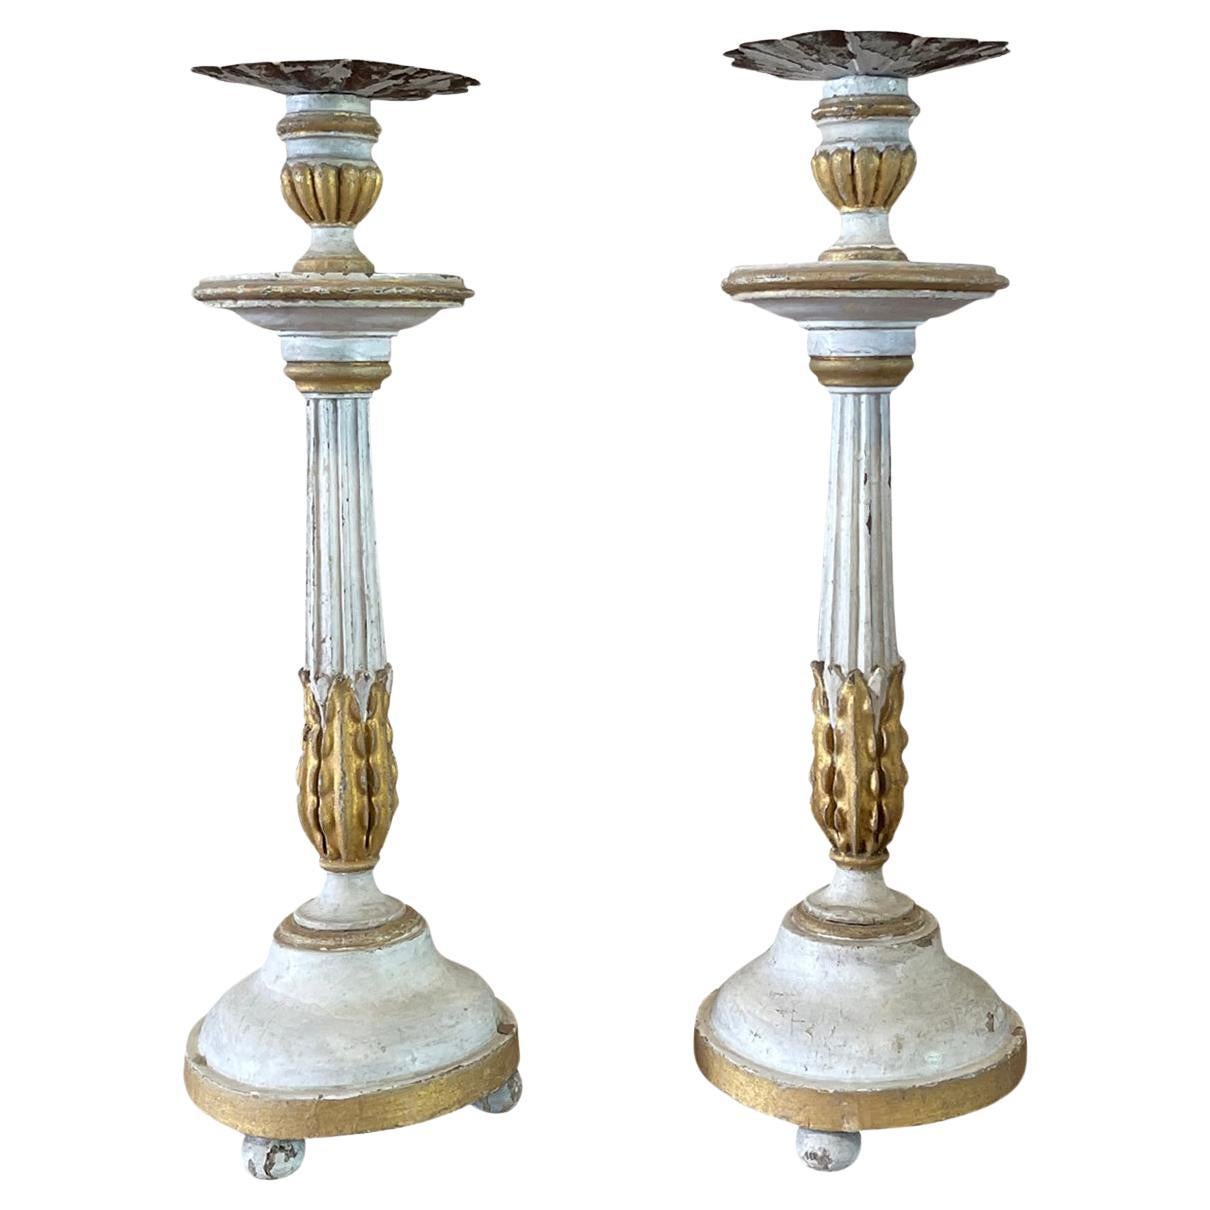 19. Jahrhundert Schwedisch-Gustavianischen Paar Kiefernholz Kerzenständer - Antique Sticks